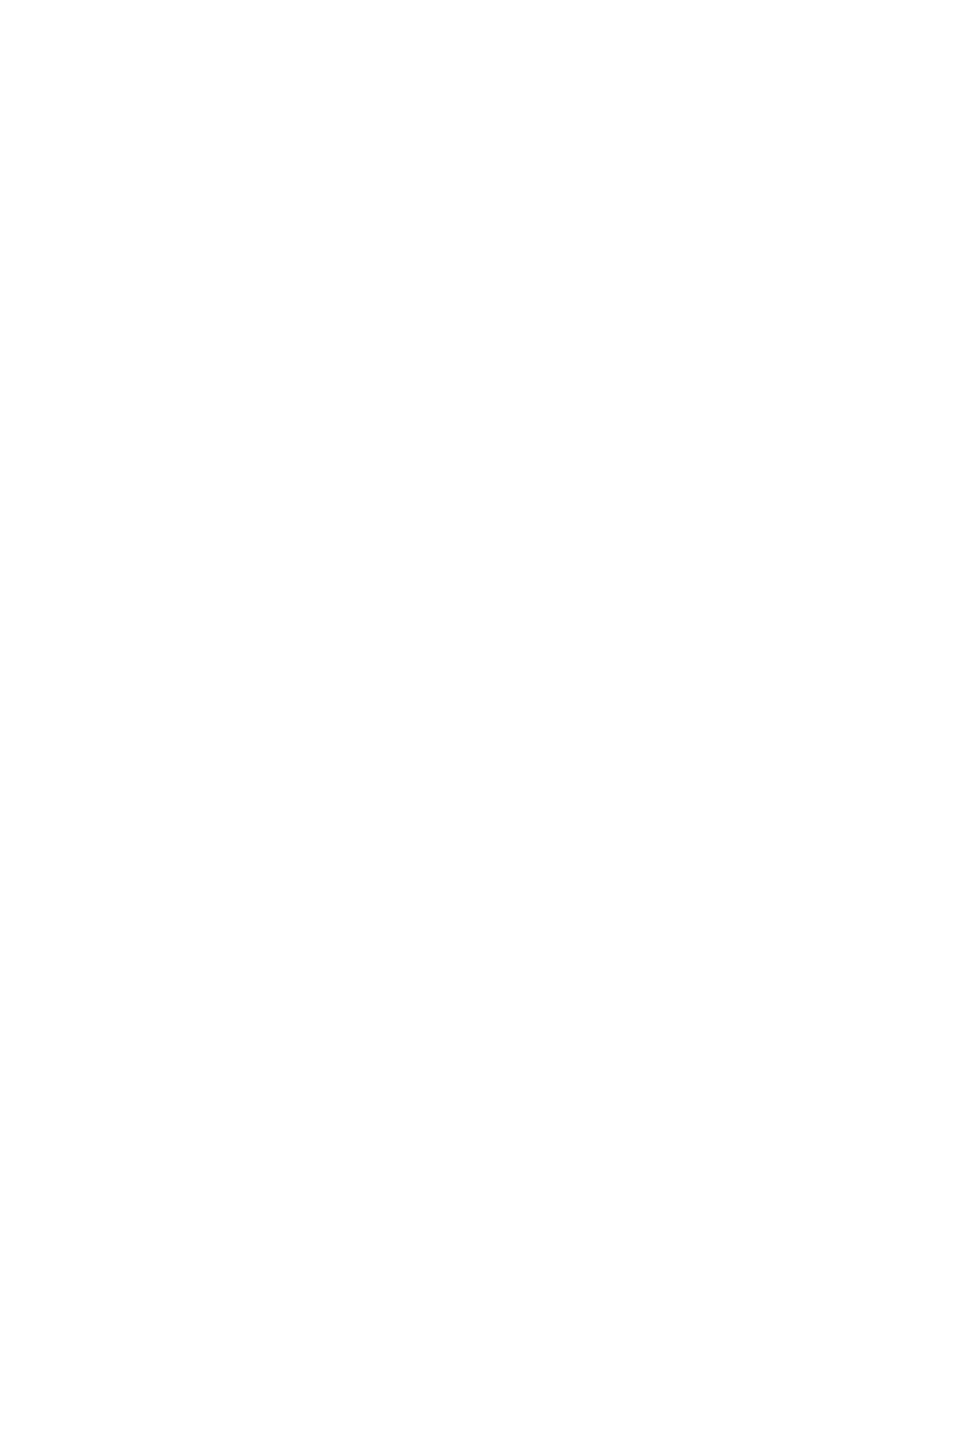 夷 语 # 边 疆 服 务 通 讯 第 期 年 月 第 页 # 苗 族 之 语 言 # 边 疆 服 务 第 期 年 月 第 页 傅 正 达 # 宁 属 土 司 起 源 的 故 事 # 边 疆